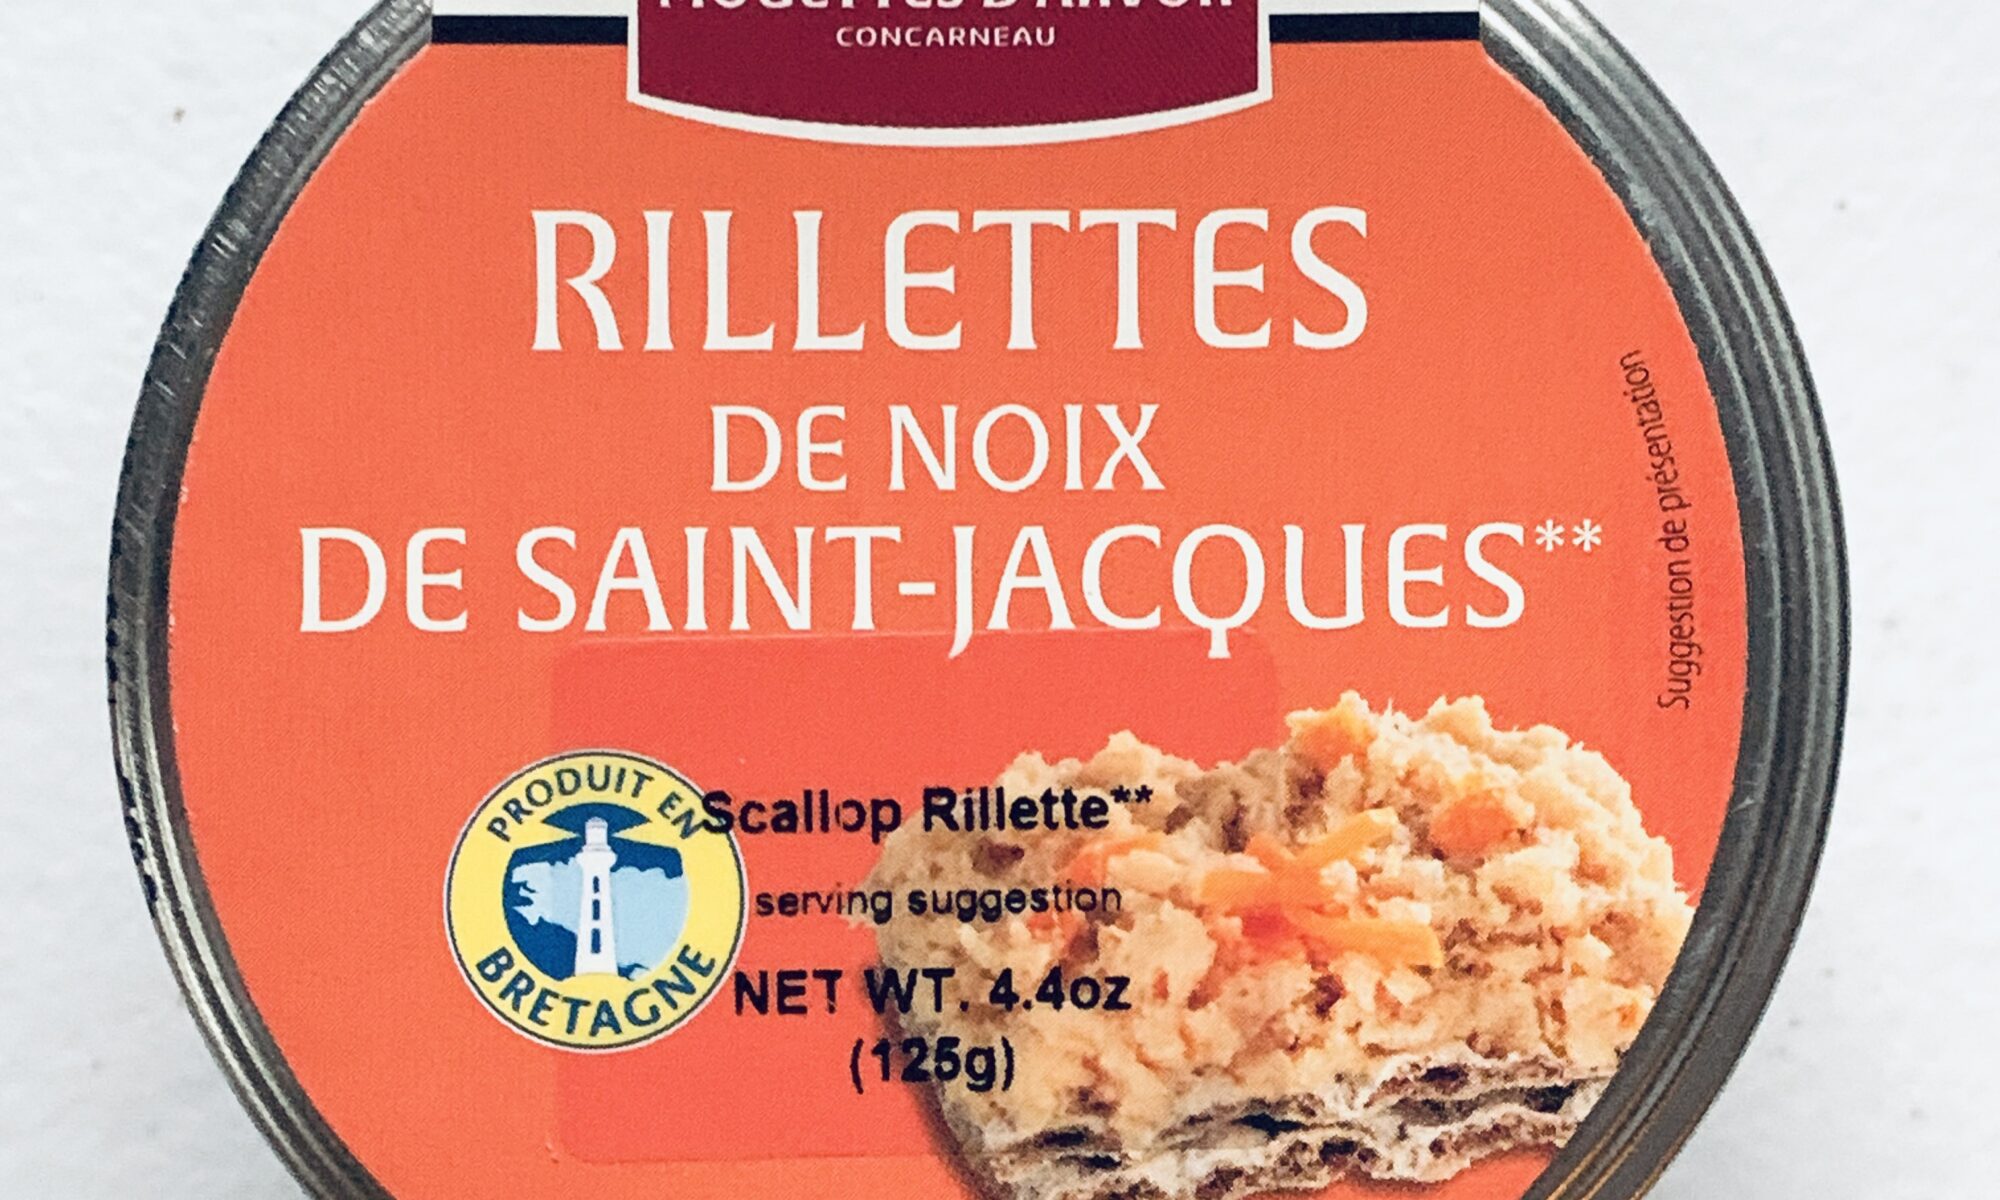 Image of the front of a jar of Mouettes d'Arvor Rillettes de noix de Saint-Jacques (Scallop Rillettes)